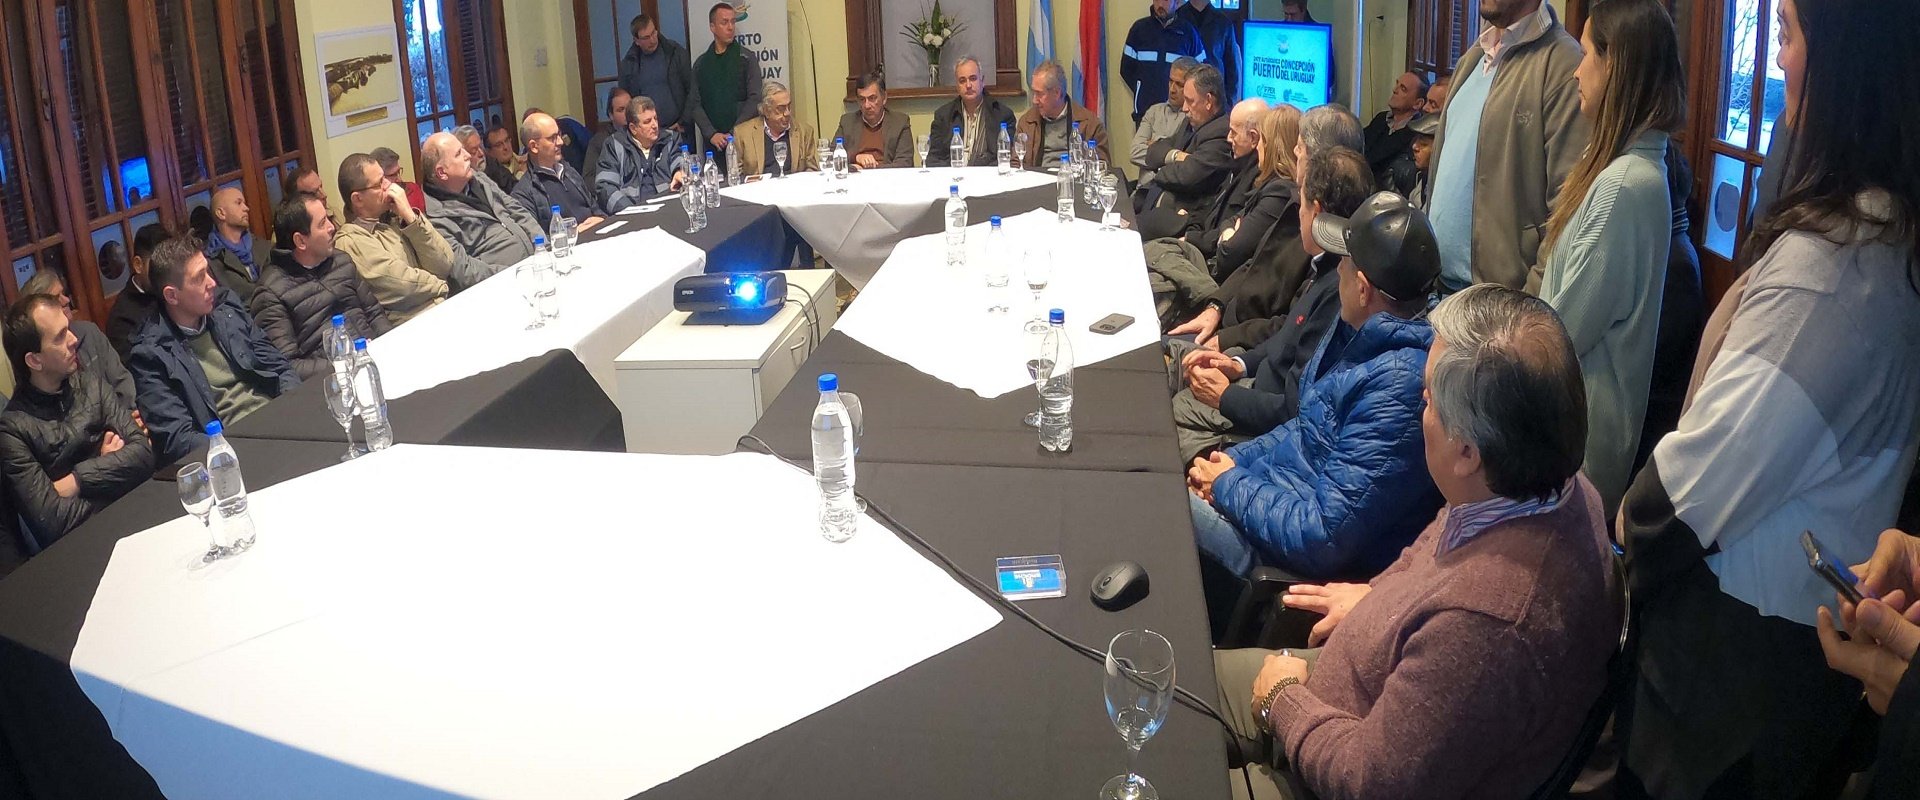 concepción del uruguay puerto reunion